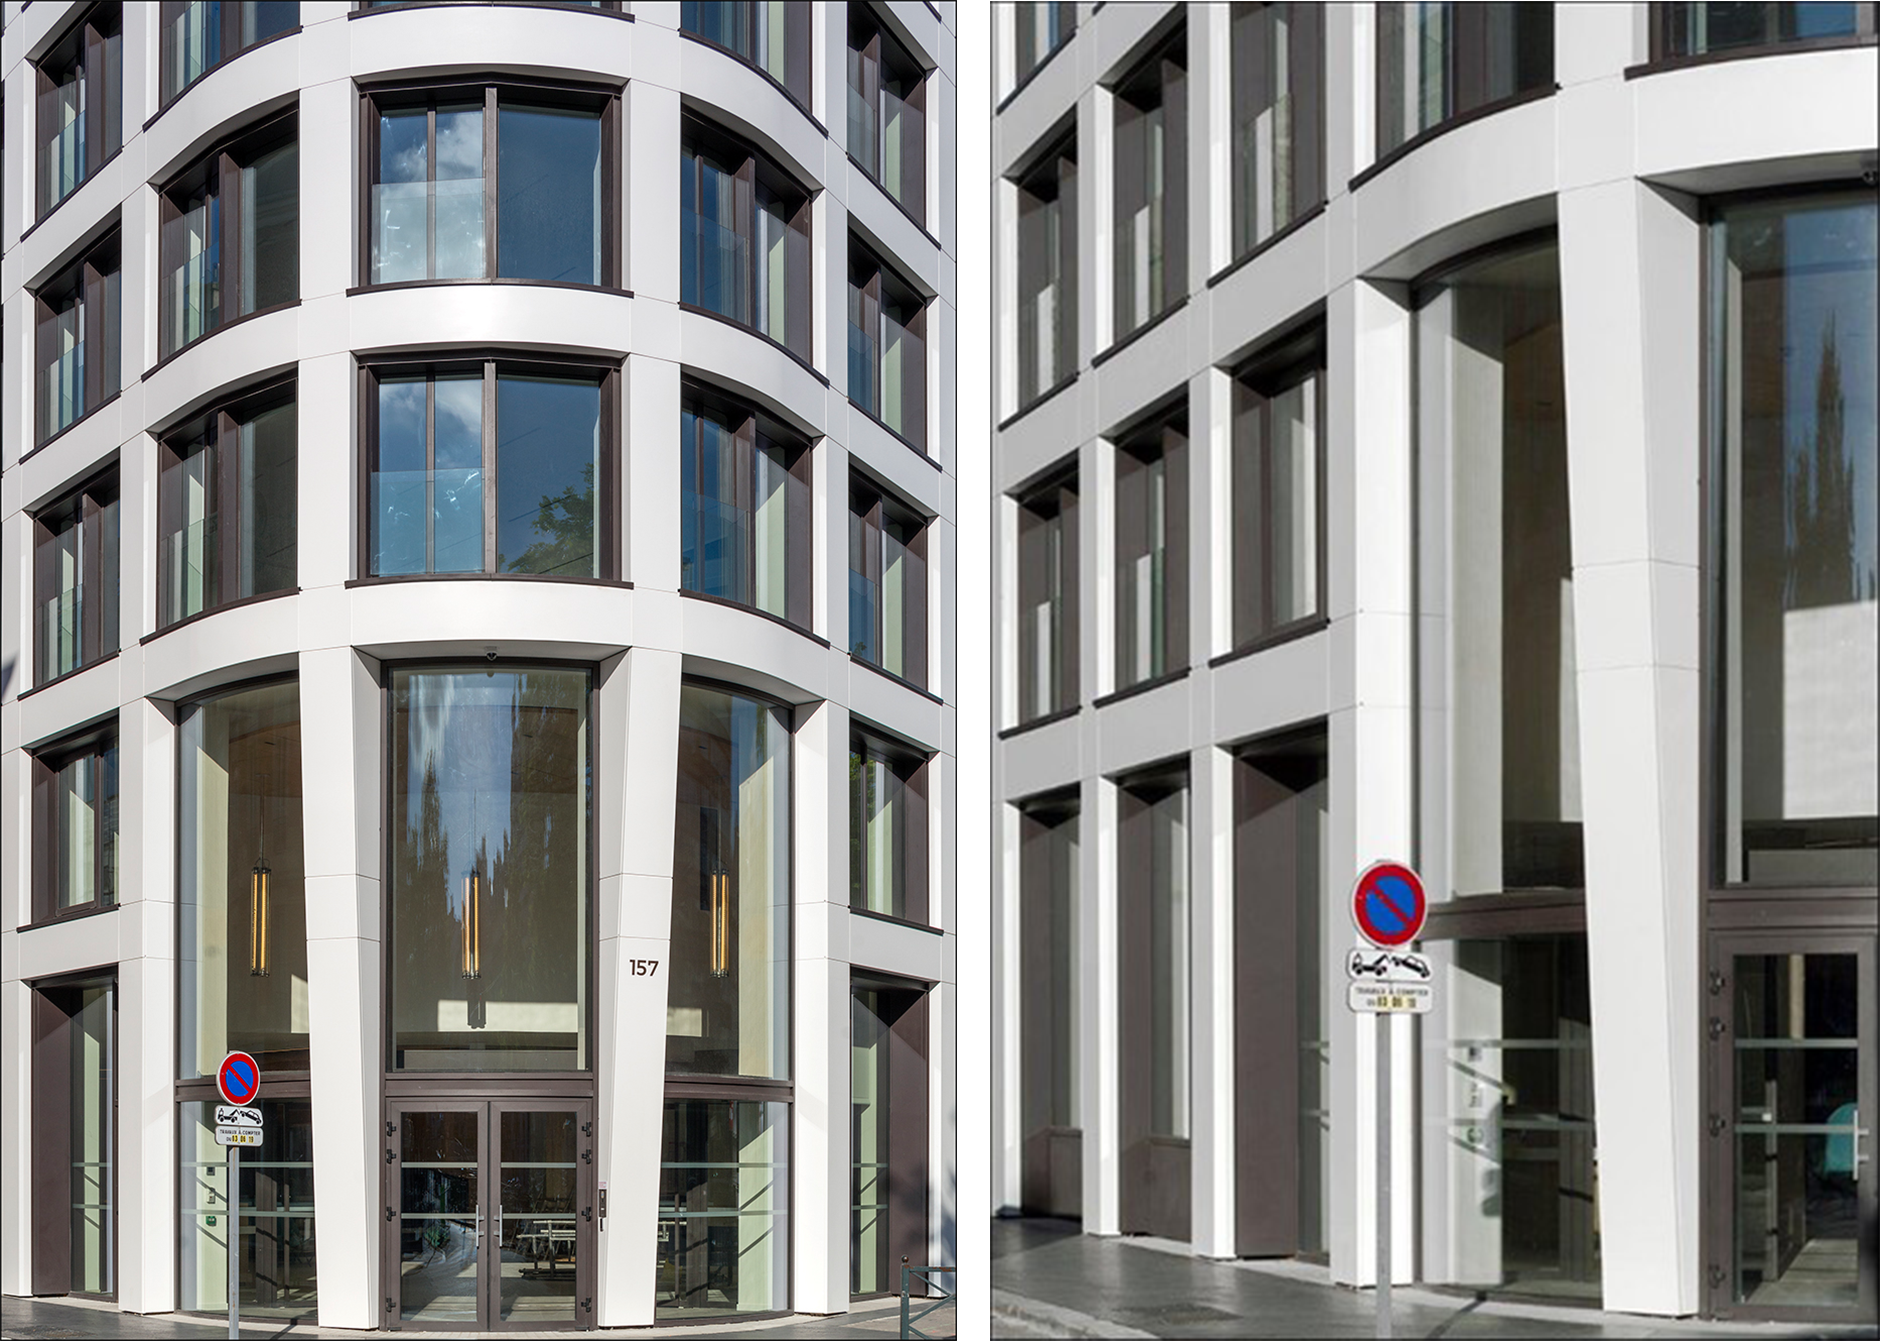 La fachada del edificio de oficinas de Neuilly (Francia) esta cubierta por 800 paneles de Corian® Solid Surface en color Glacier White